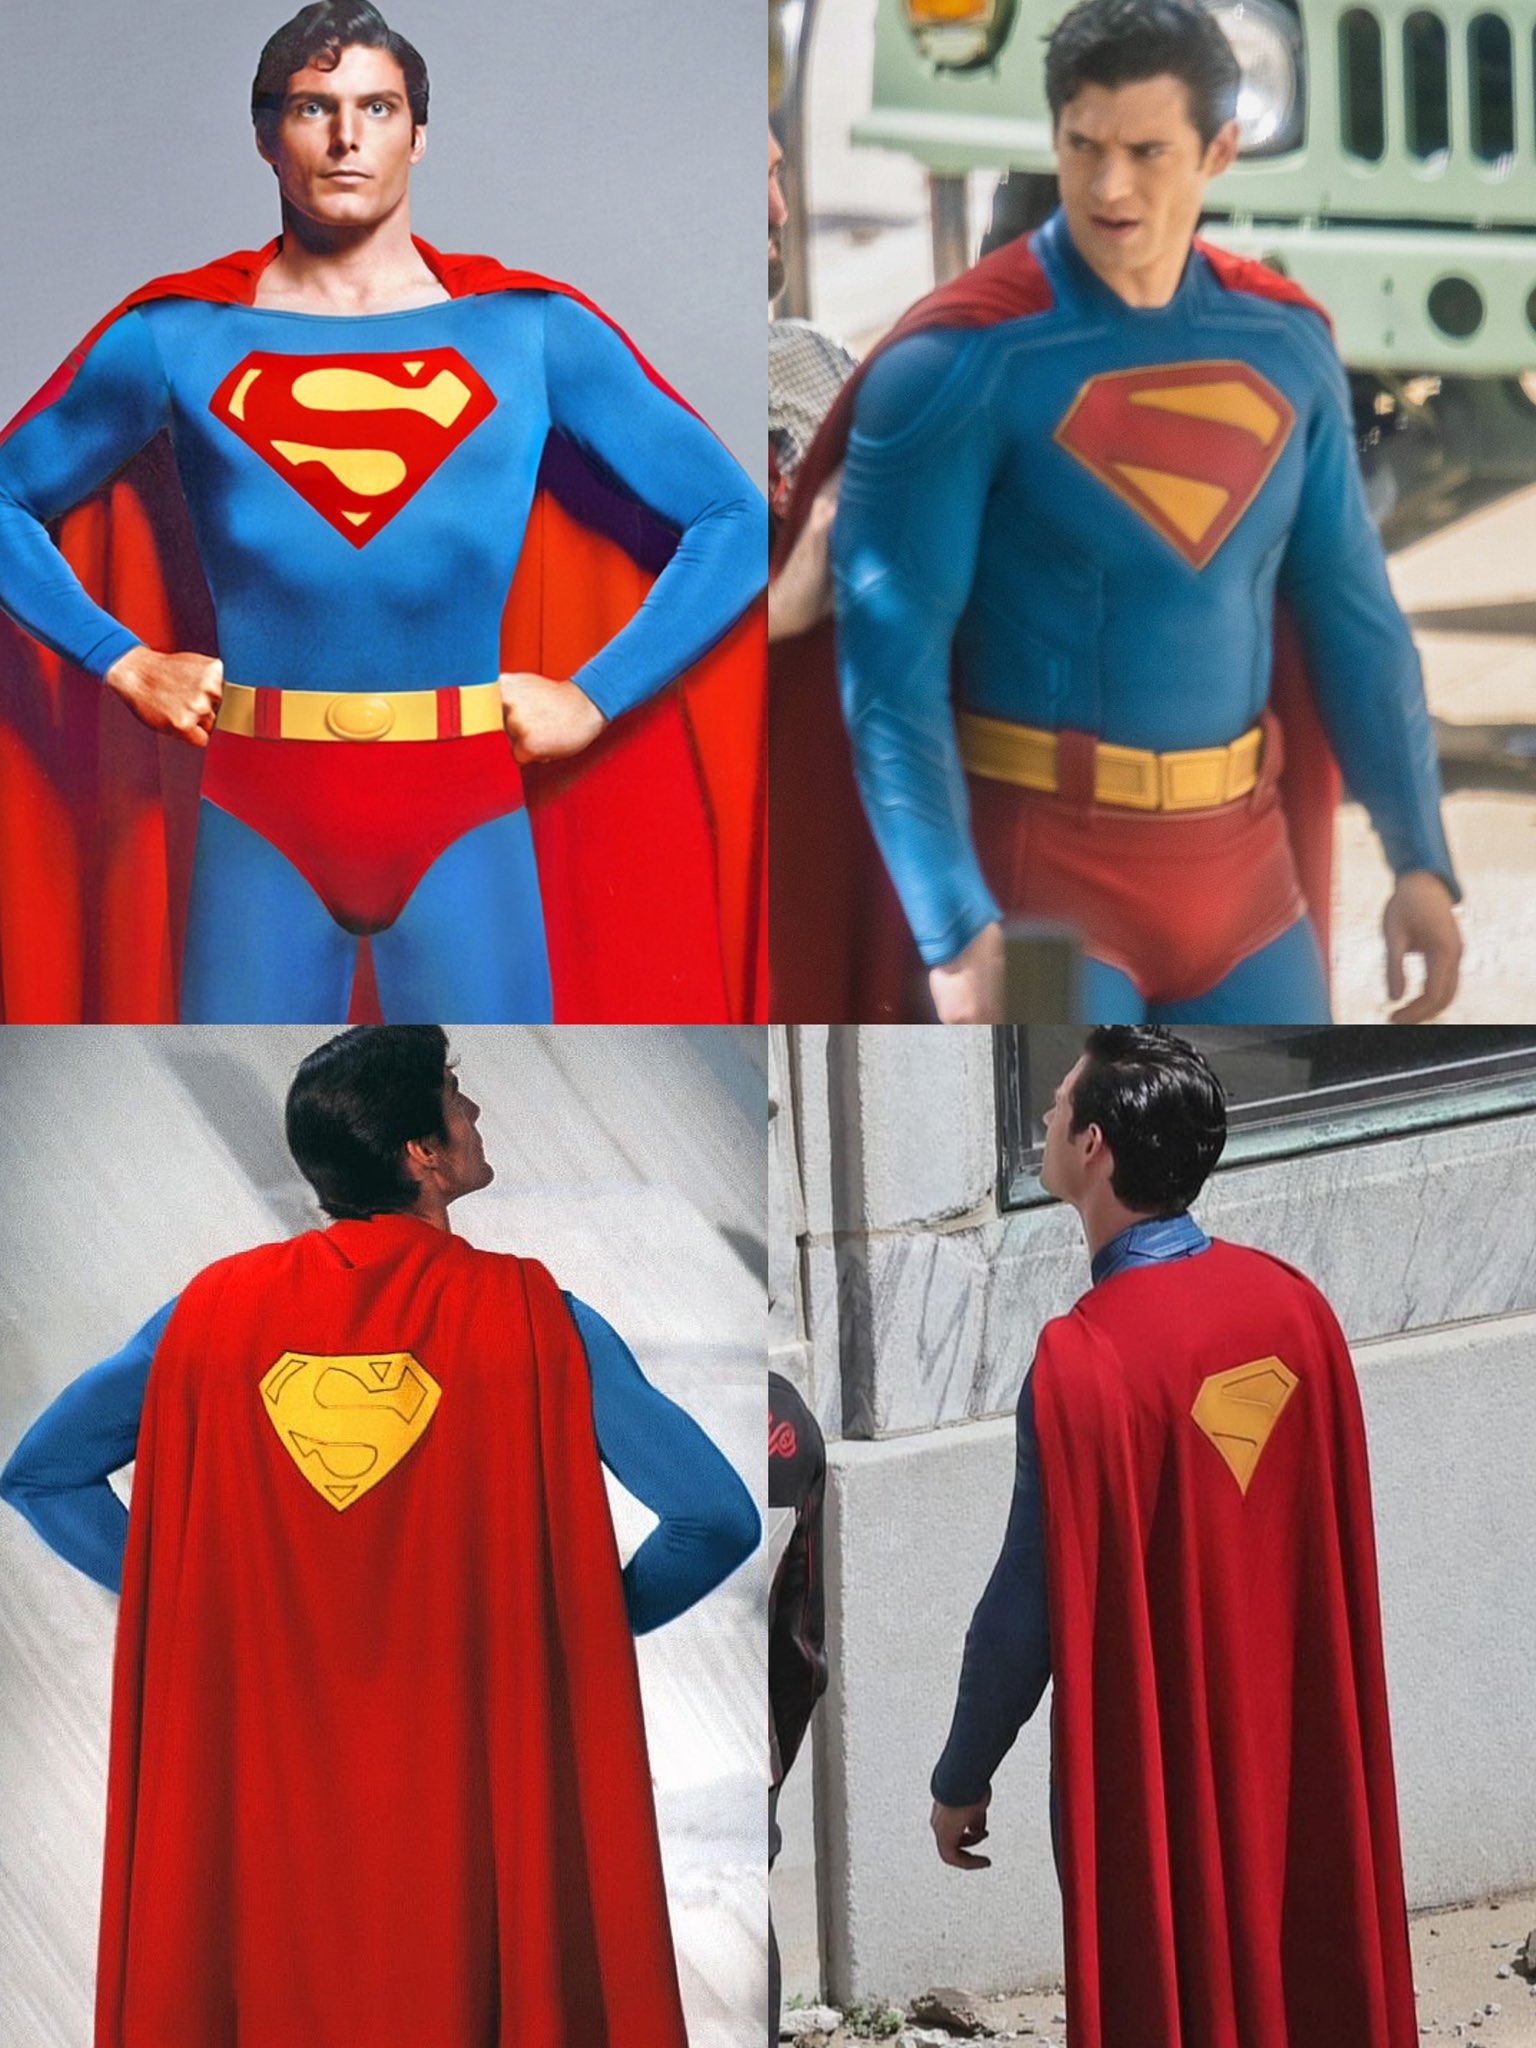 Ярко и канонично! Новый кинодизайн Супермена от Джеймса Ганна — фото со съёмок